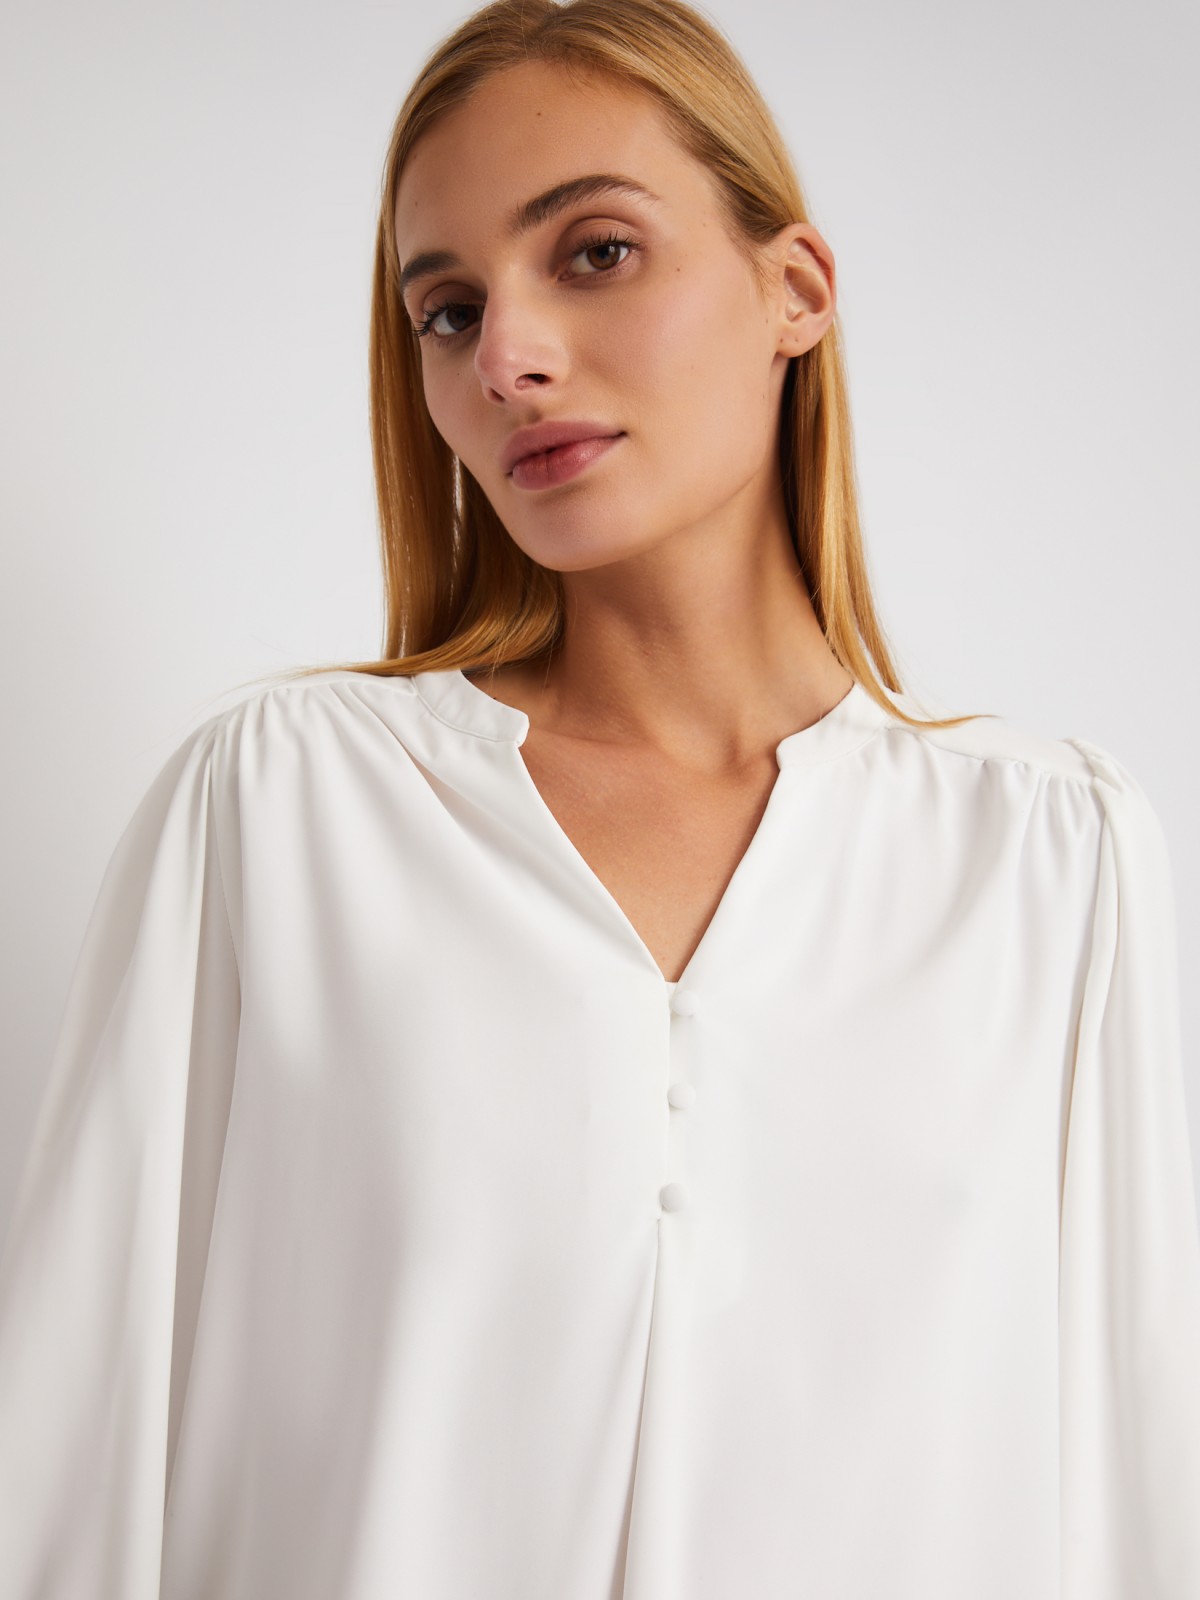 Блузка с объёмными рукавами и V-образным вырезом на груди